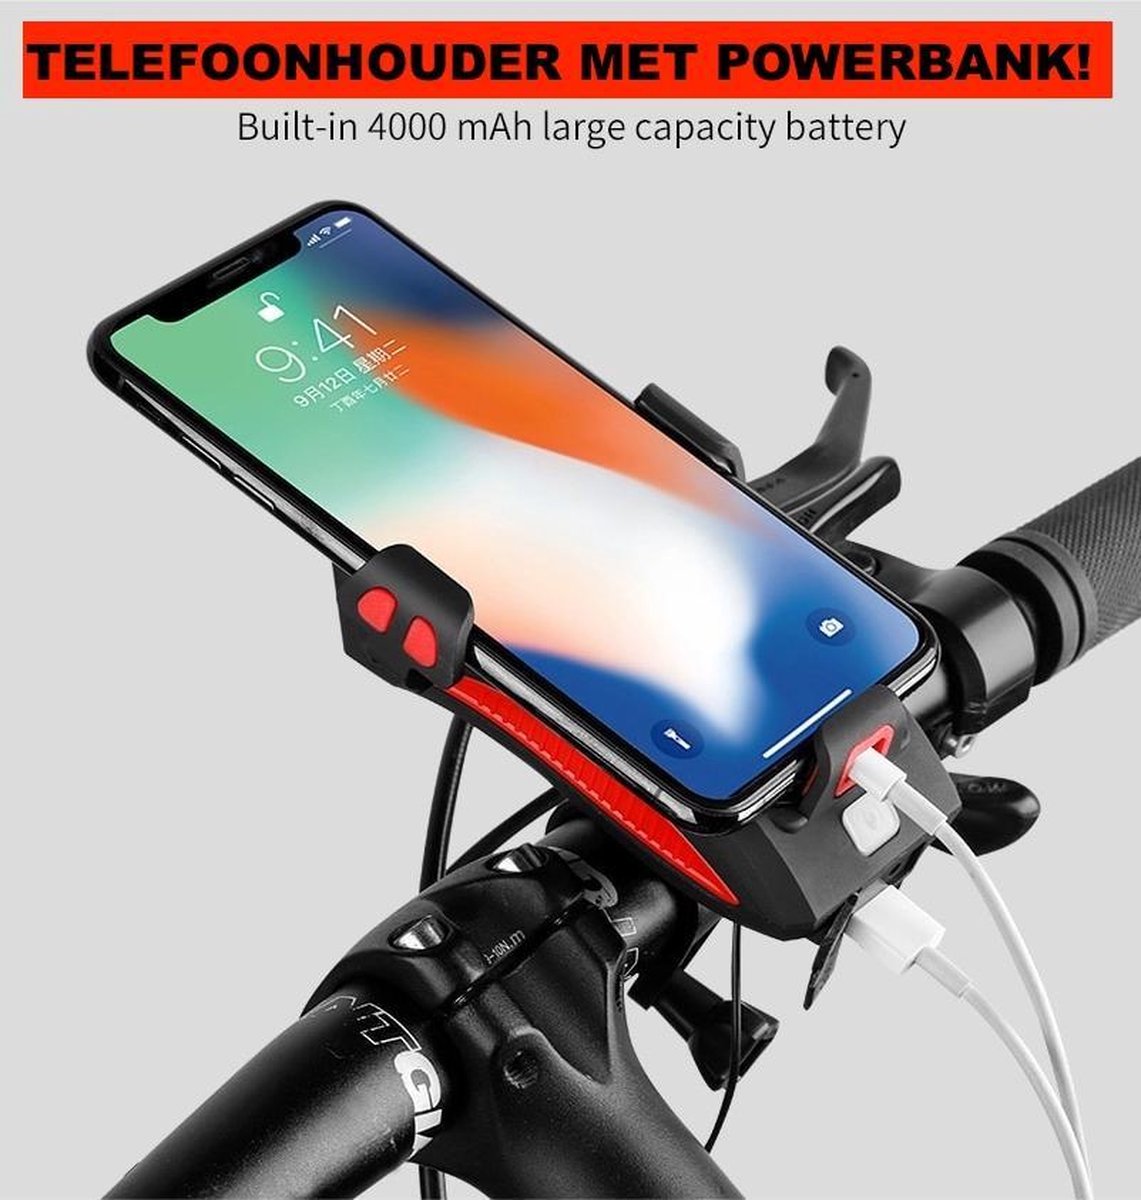 Powerbank fiets telefoonhouder - fiets smartphone houder - telefoonhouder met oplader fiets - 4000 mAh - claxon - koplamp - zwart - Merkloos